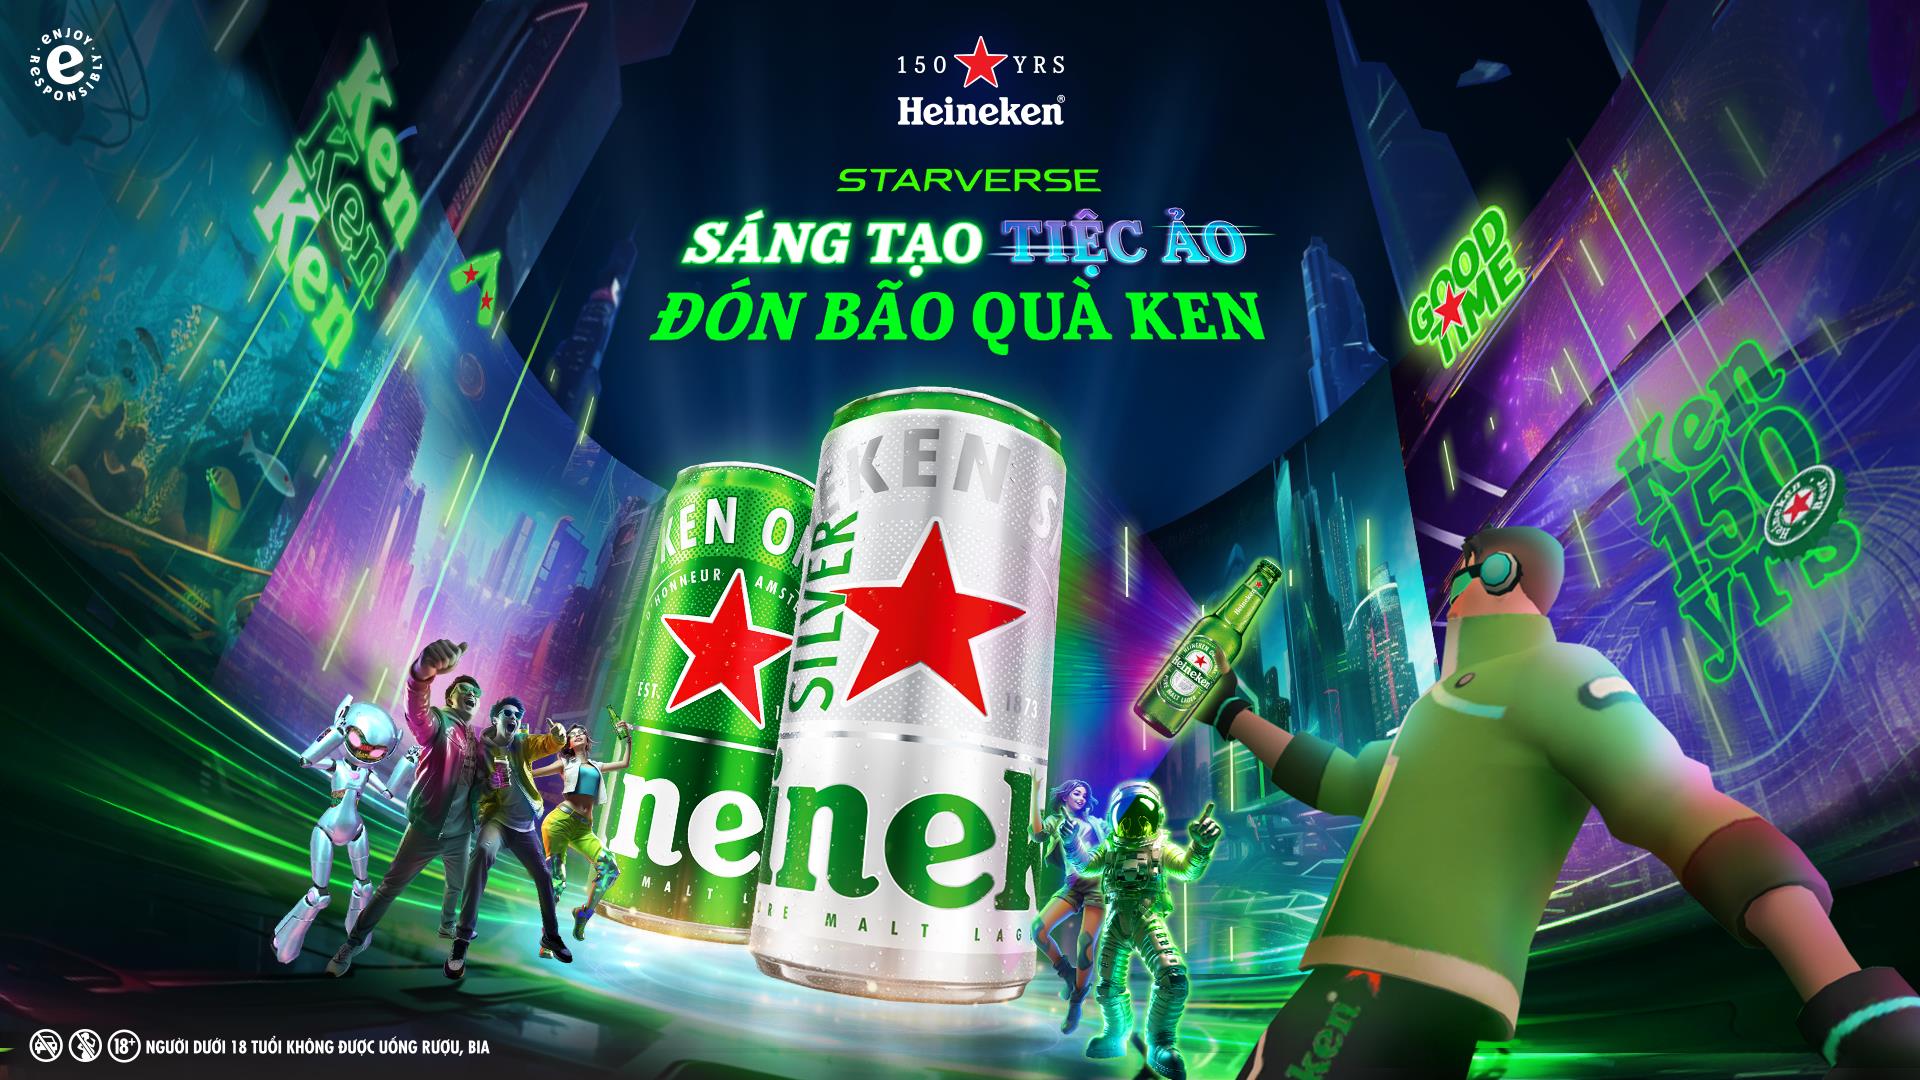 Jun Phạm, Cris Phan cùng giới trẻ tạo không gian đại tiệc tại Starverse, tưng bừng đại tiệc 150 năm cùng Heineken - Ảnh 1.